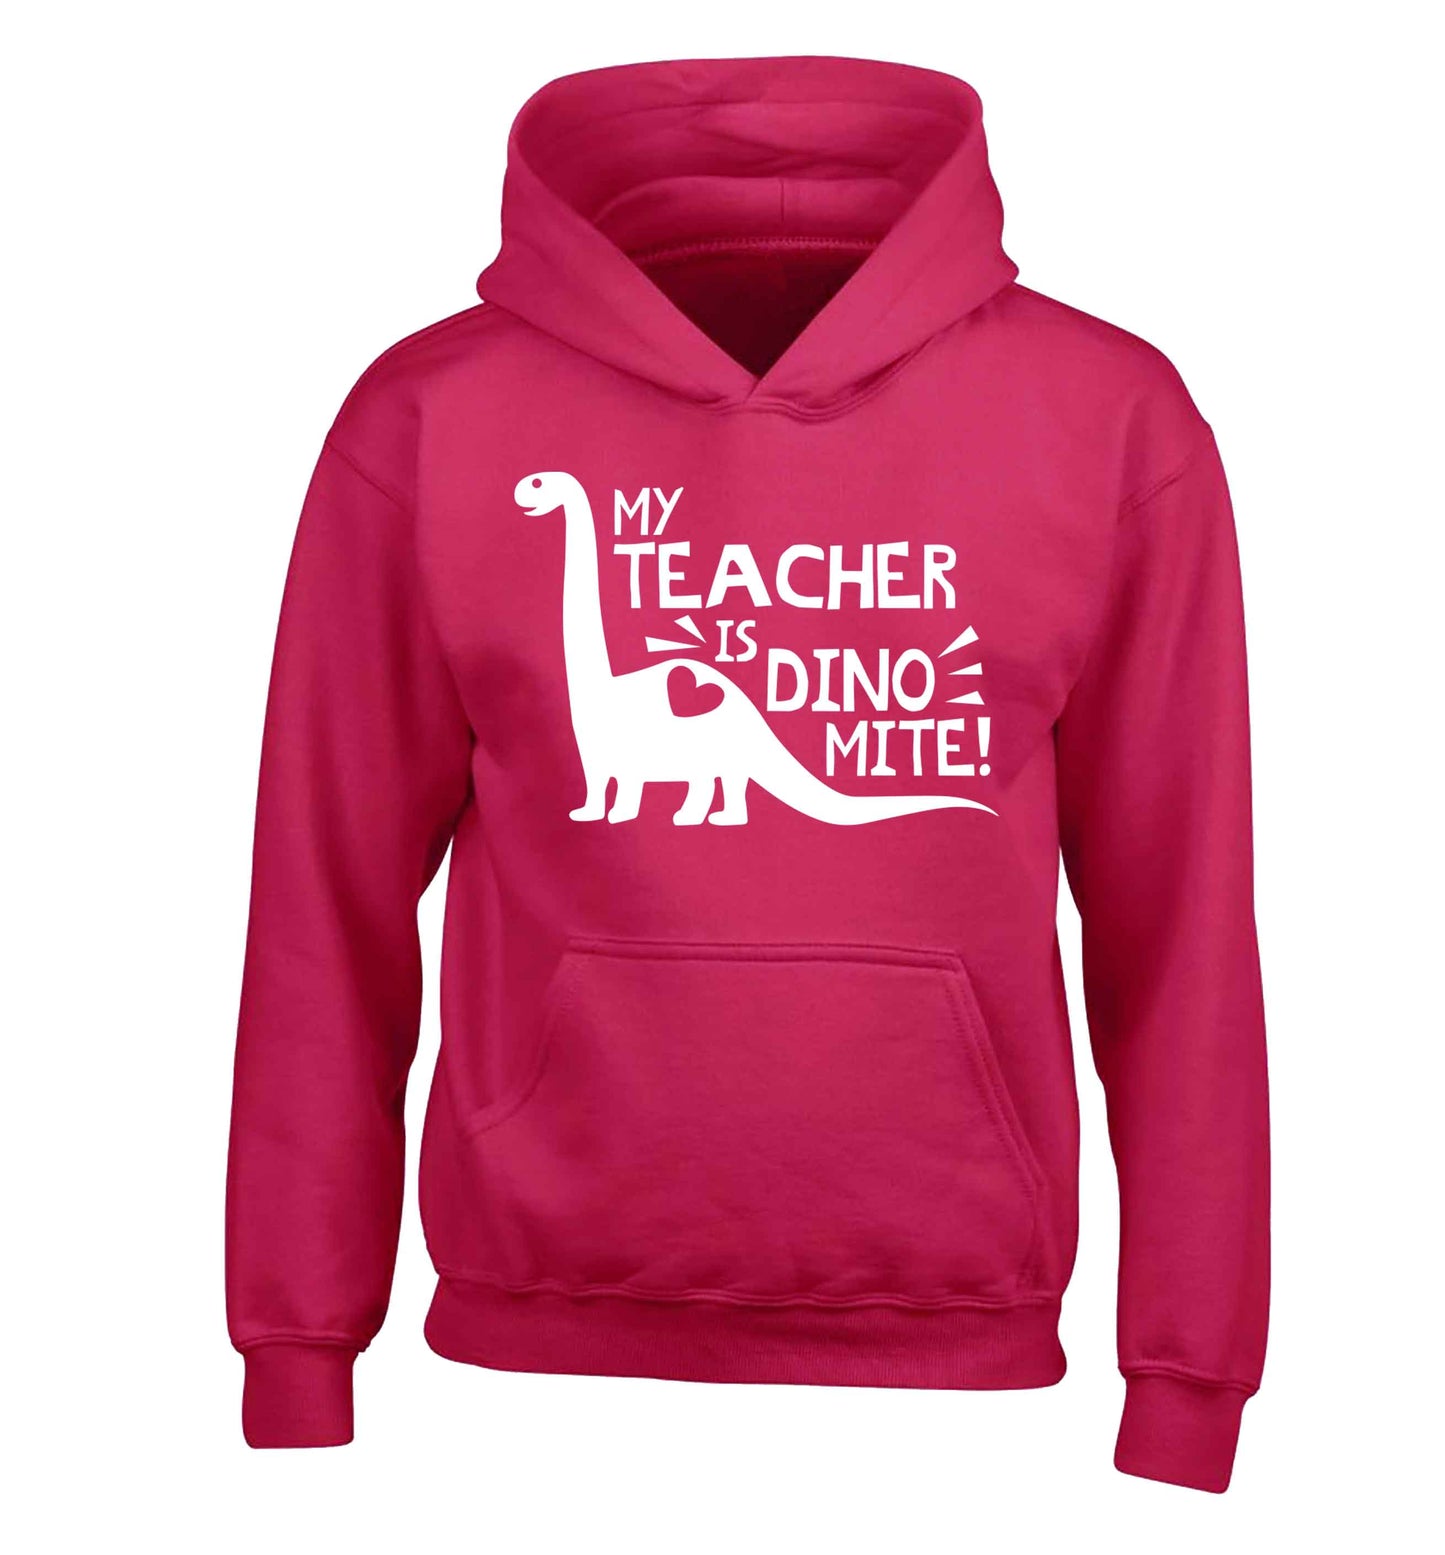 My teacher is dinomite! children's pink hoodie 12-13 Years